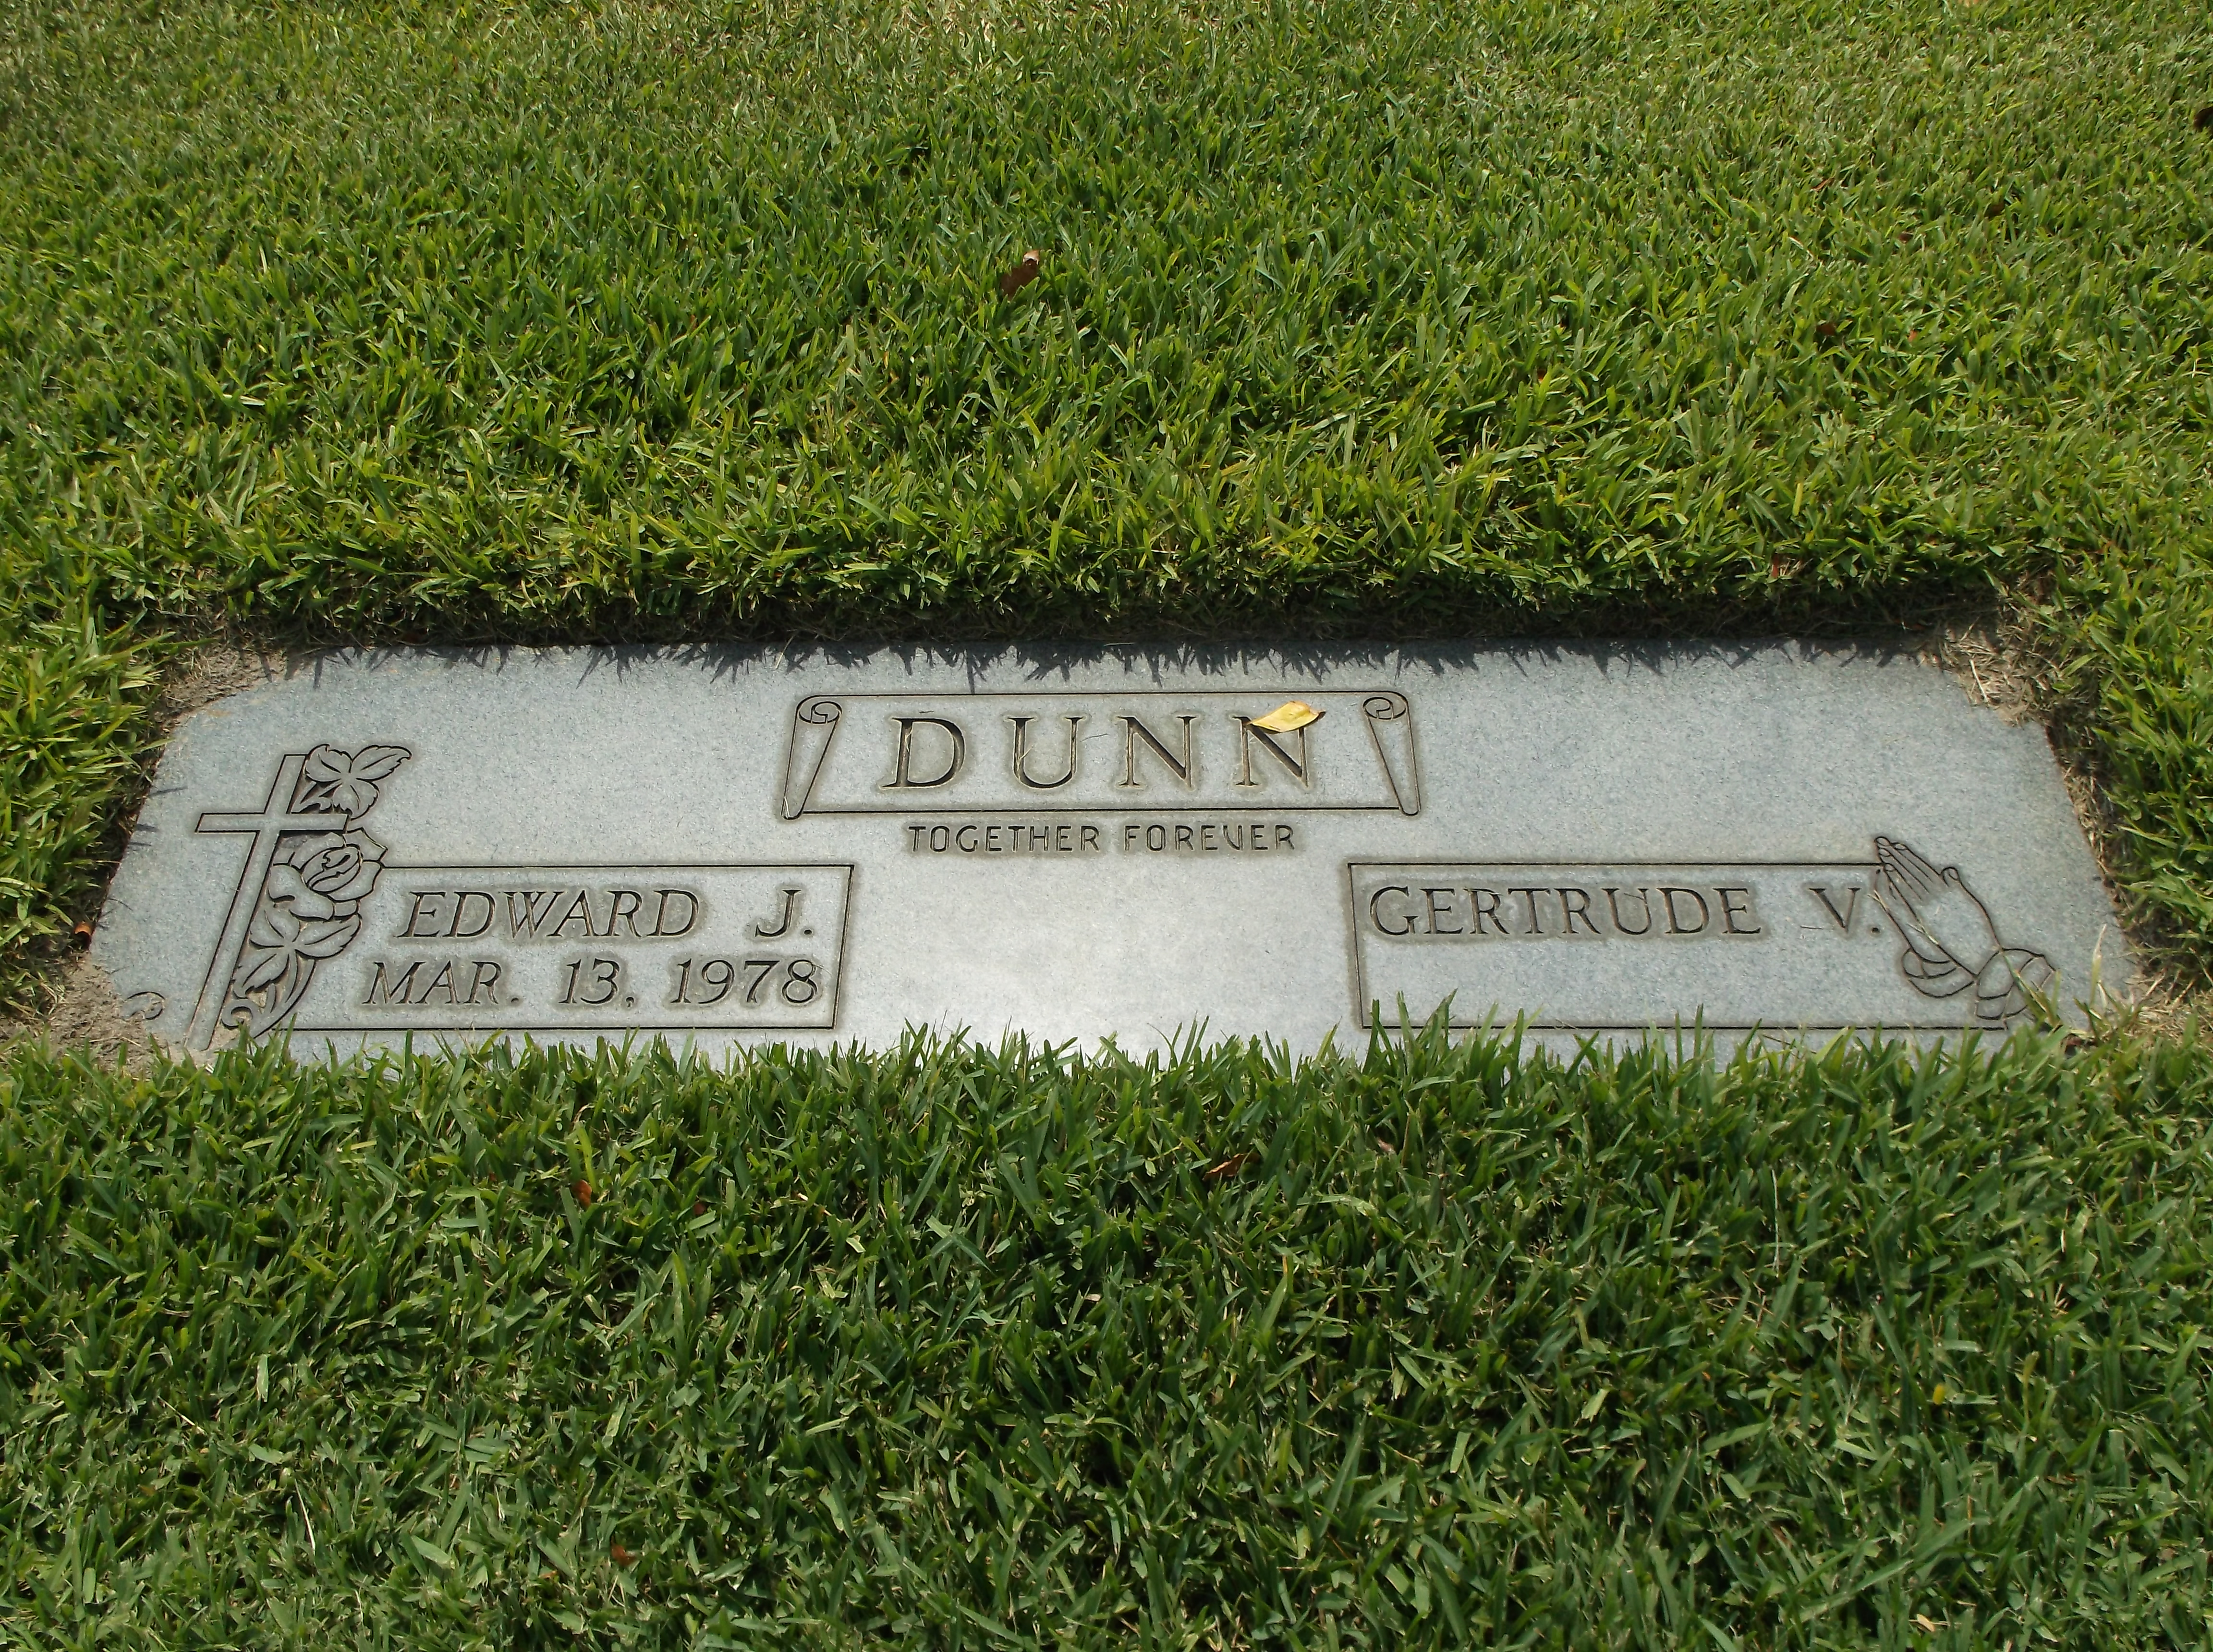 Edward J Dunn